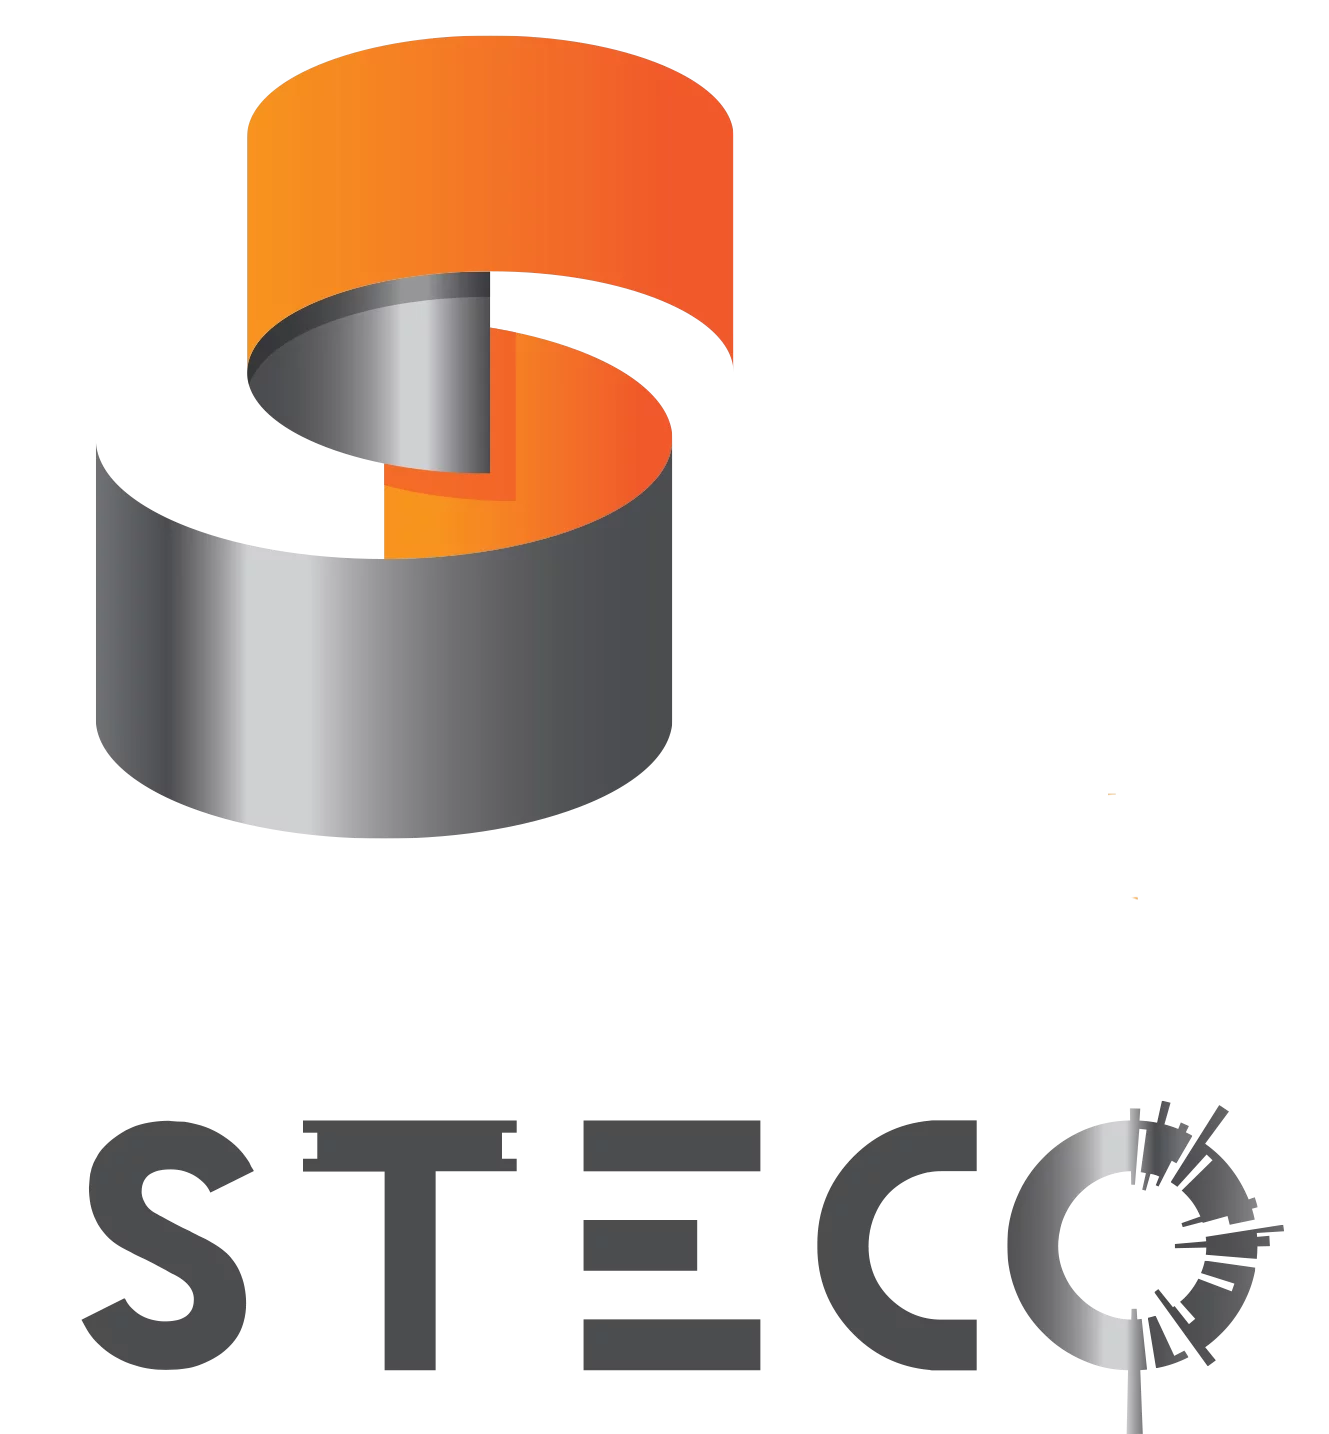 20230921170707_steco-logo-04-ss-baseline.png